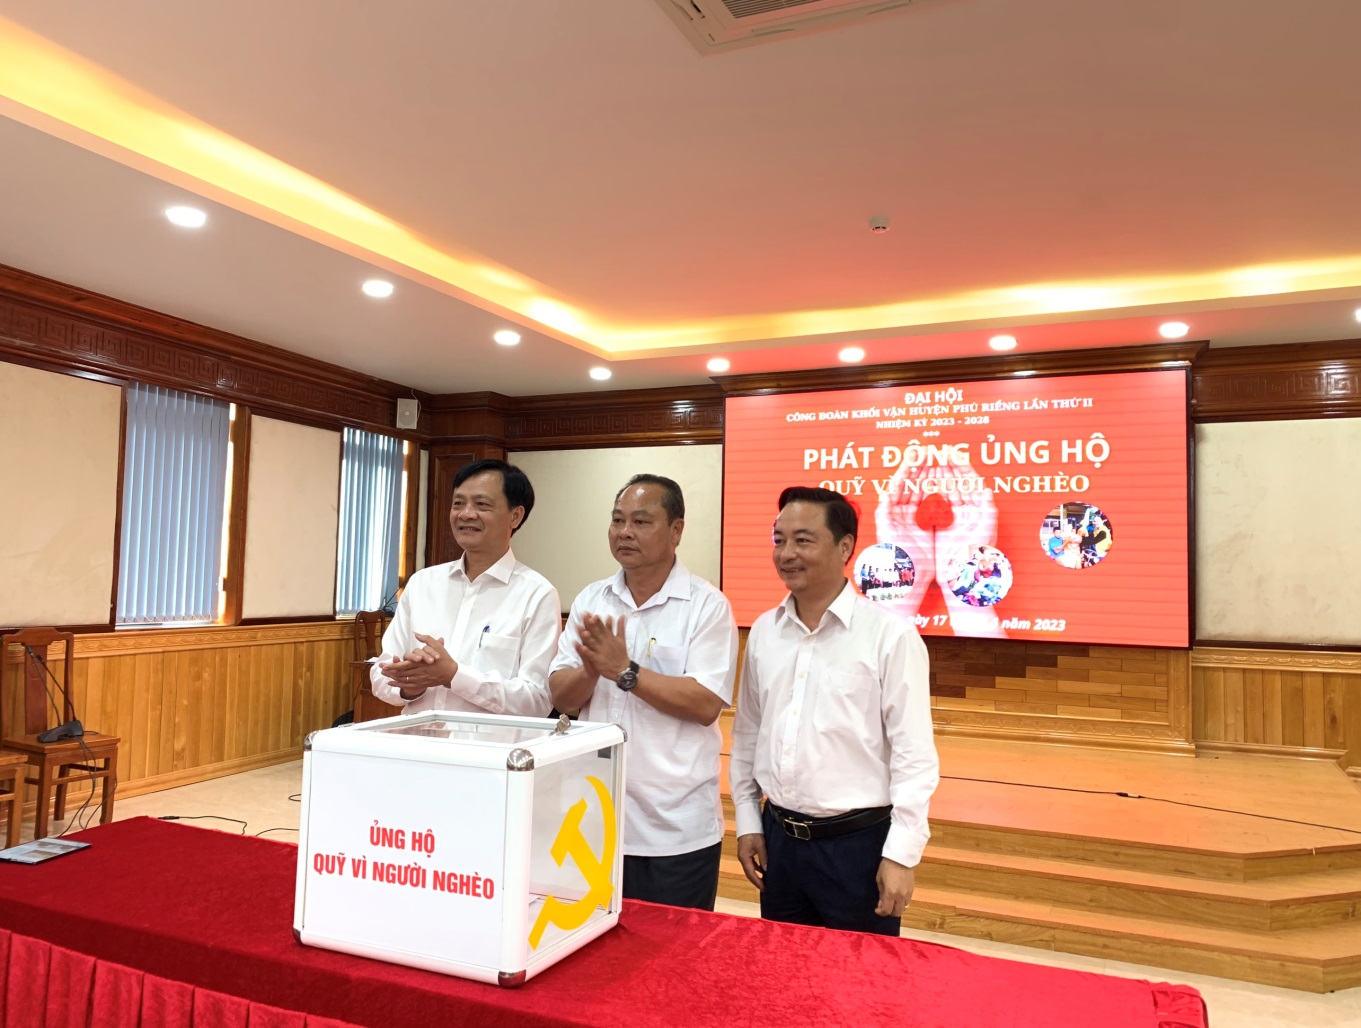 Quỹ “Vì người nghèo” huyện Phú Riềng đã vận động và tiếp nhận được gần 22 tỷ đồng hỗ trợ xây dựng và sửa chữa nhà ở